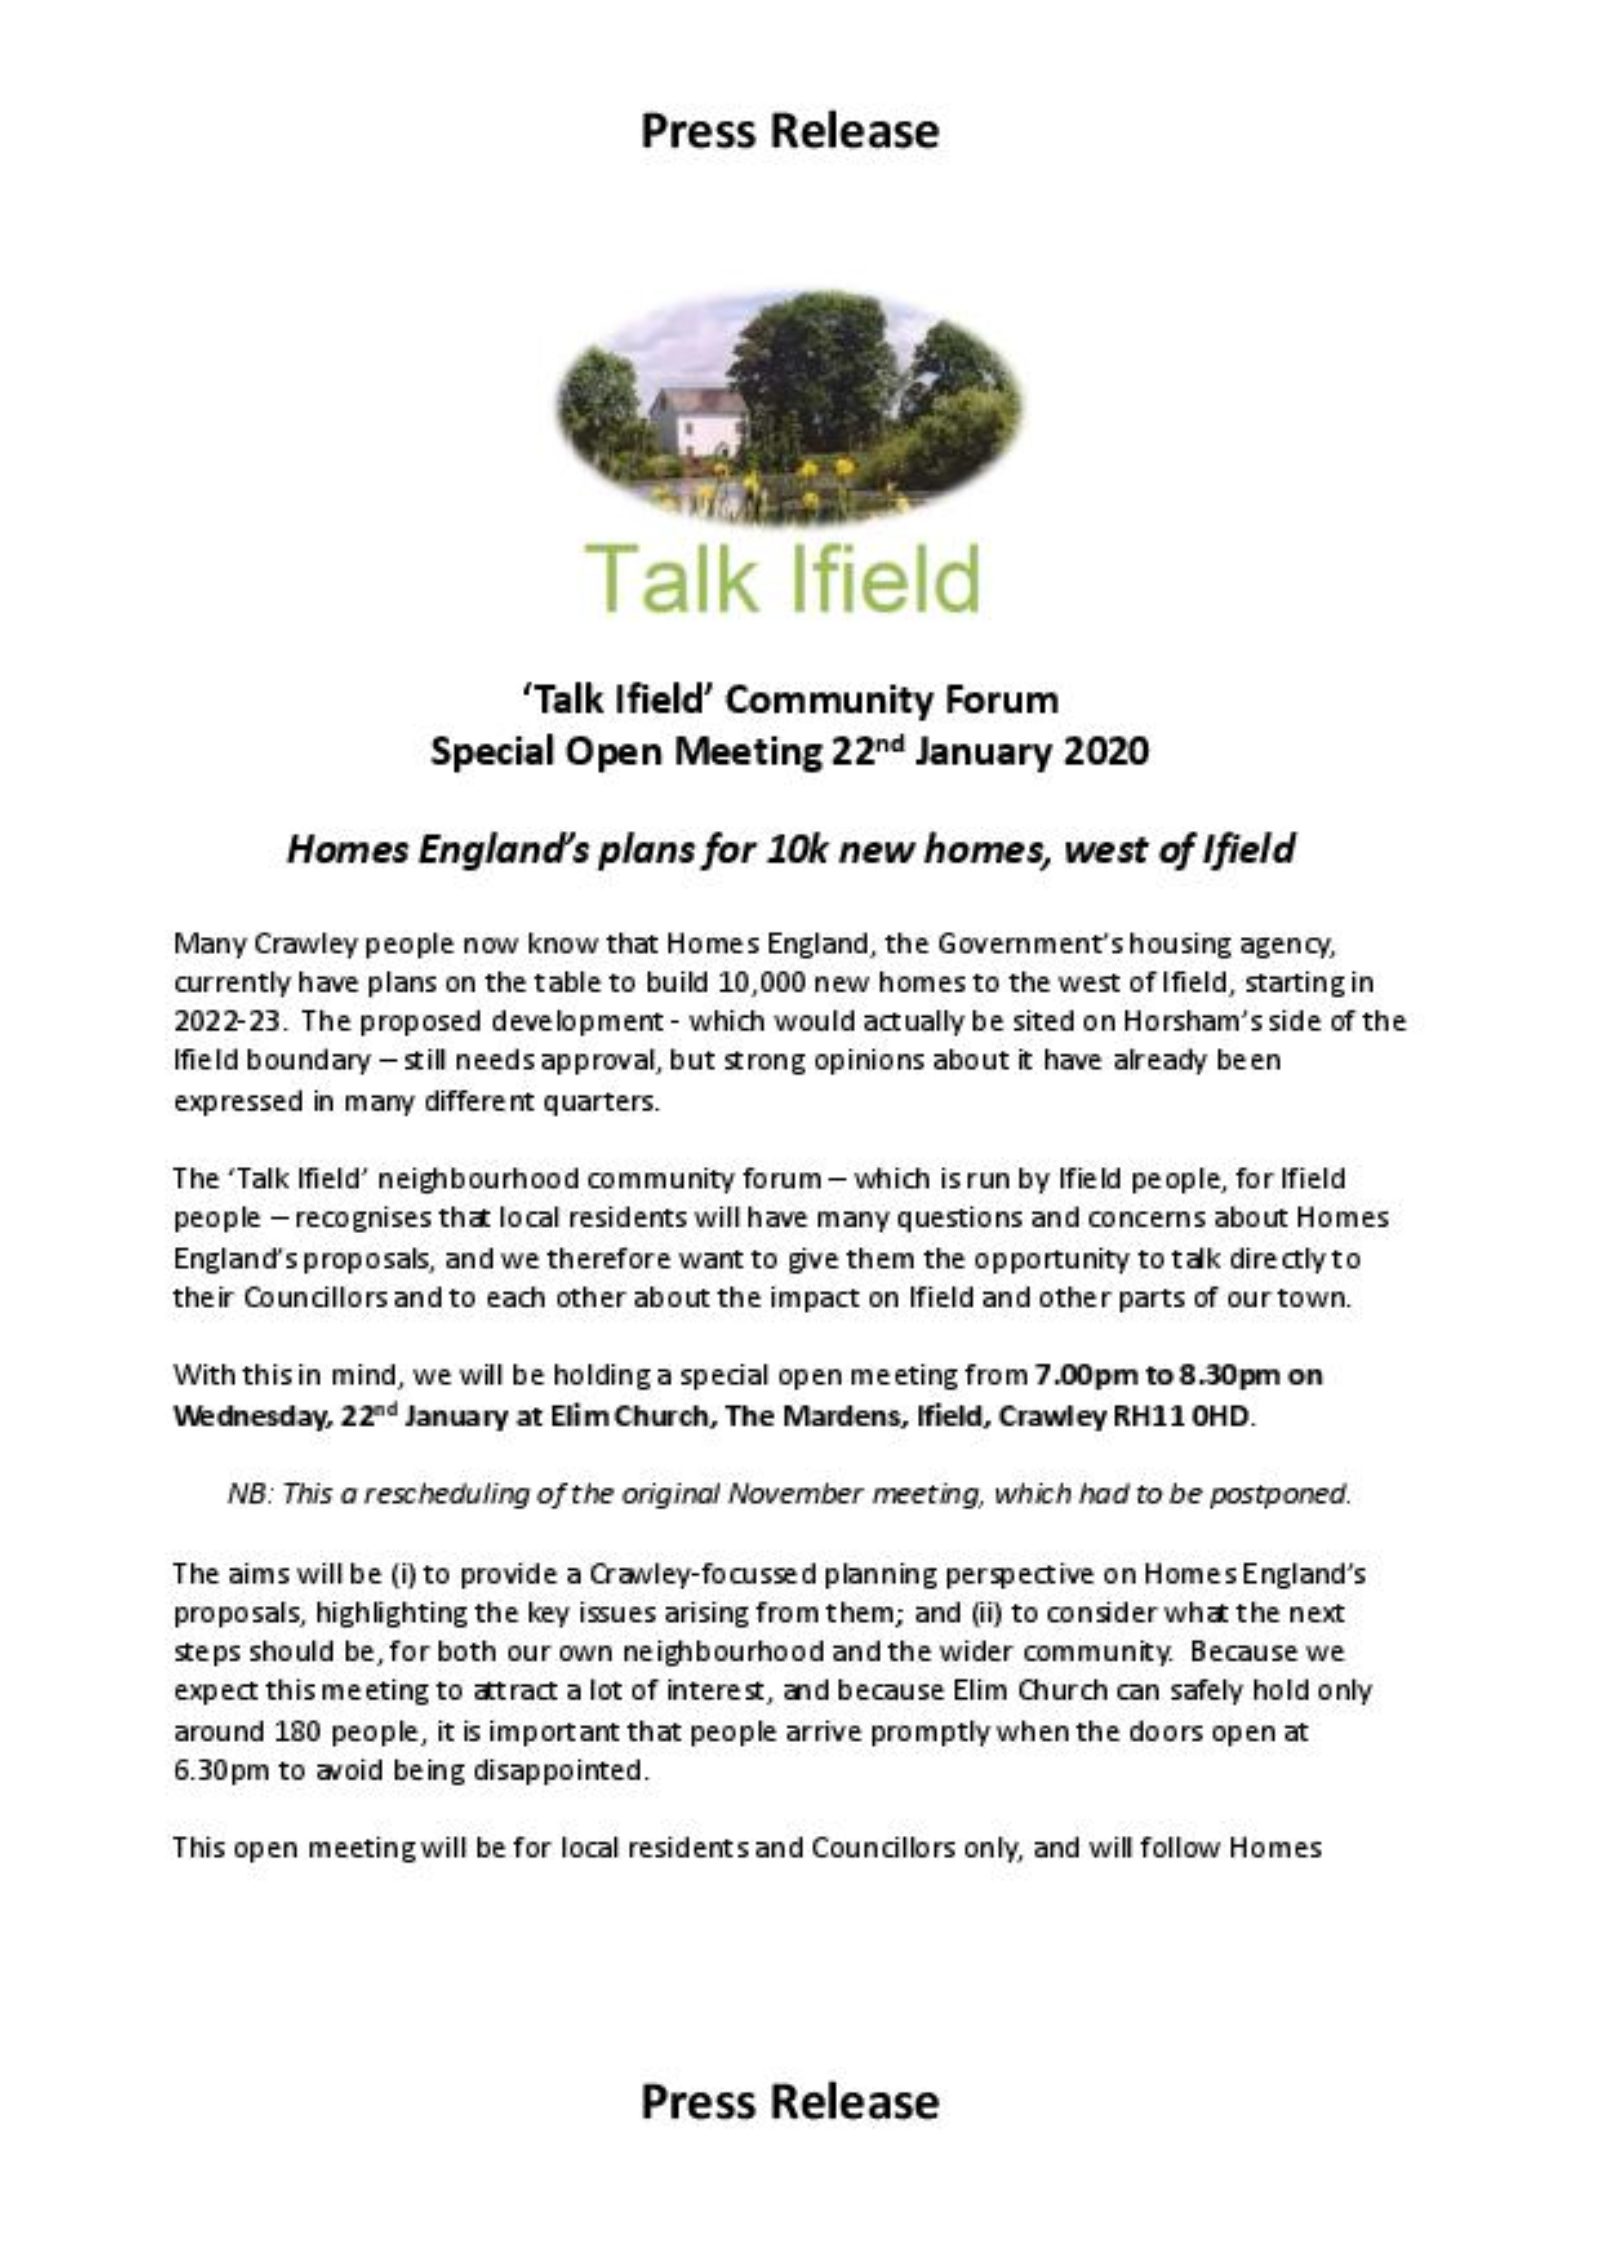 Talk Ifield press release part 1